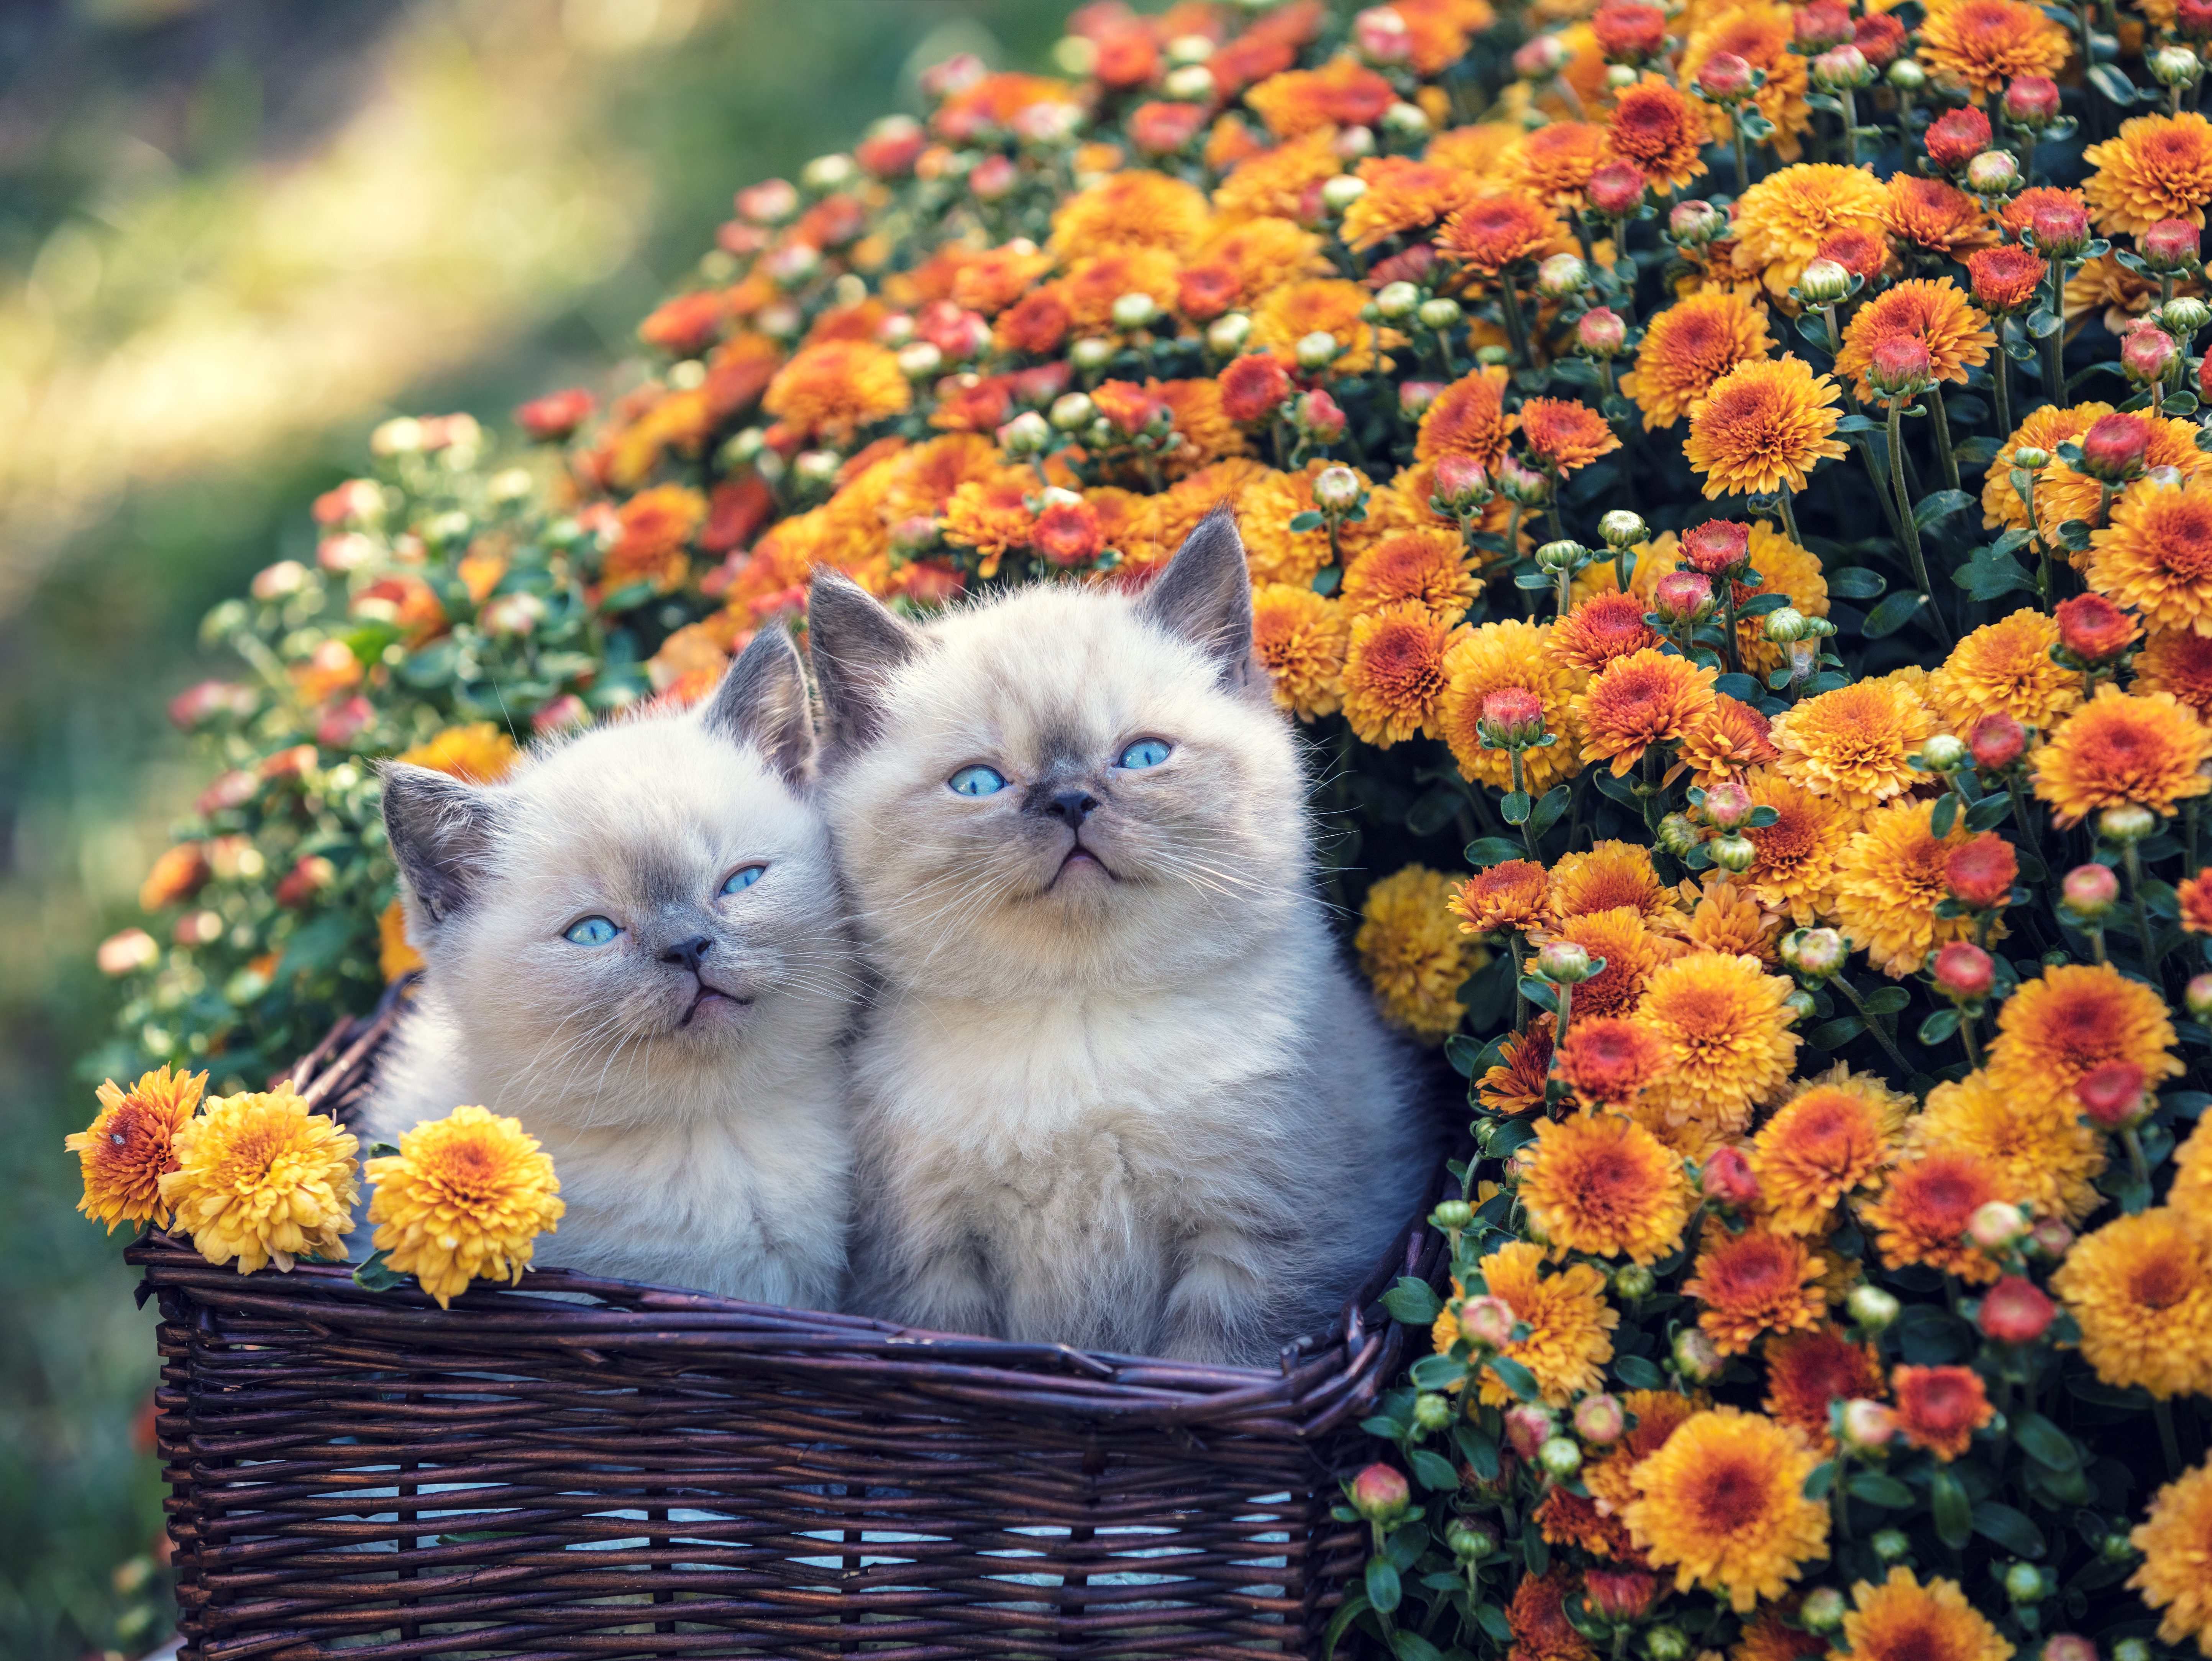 Two cute little kittens in a basket in a garden near orange chrysanthemum flowers